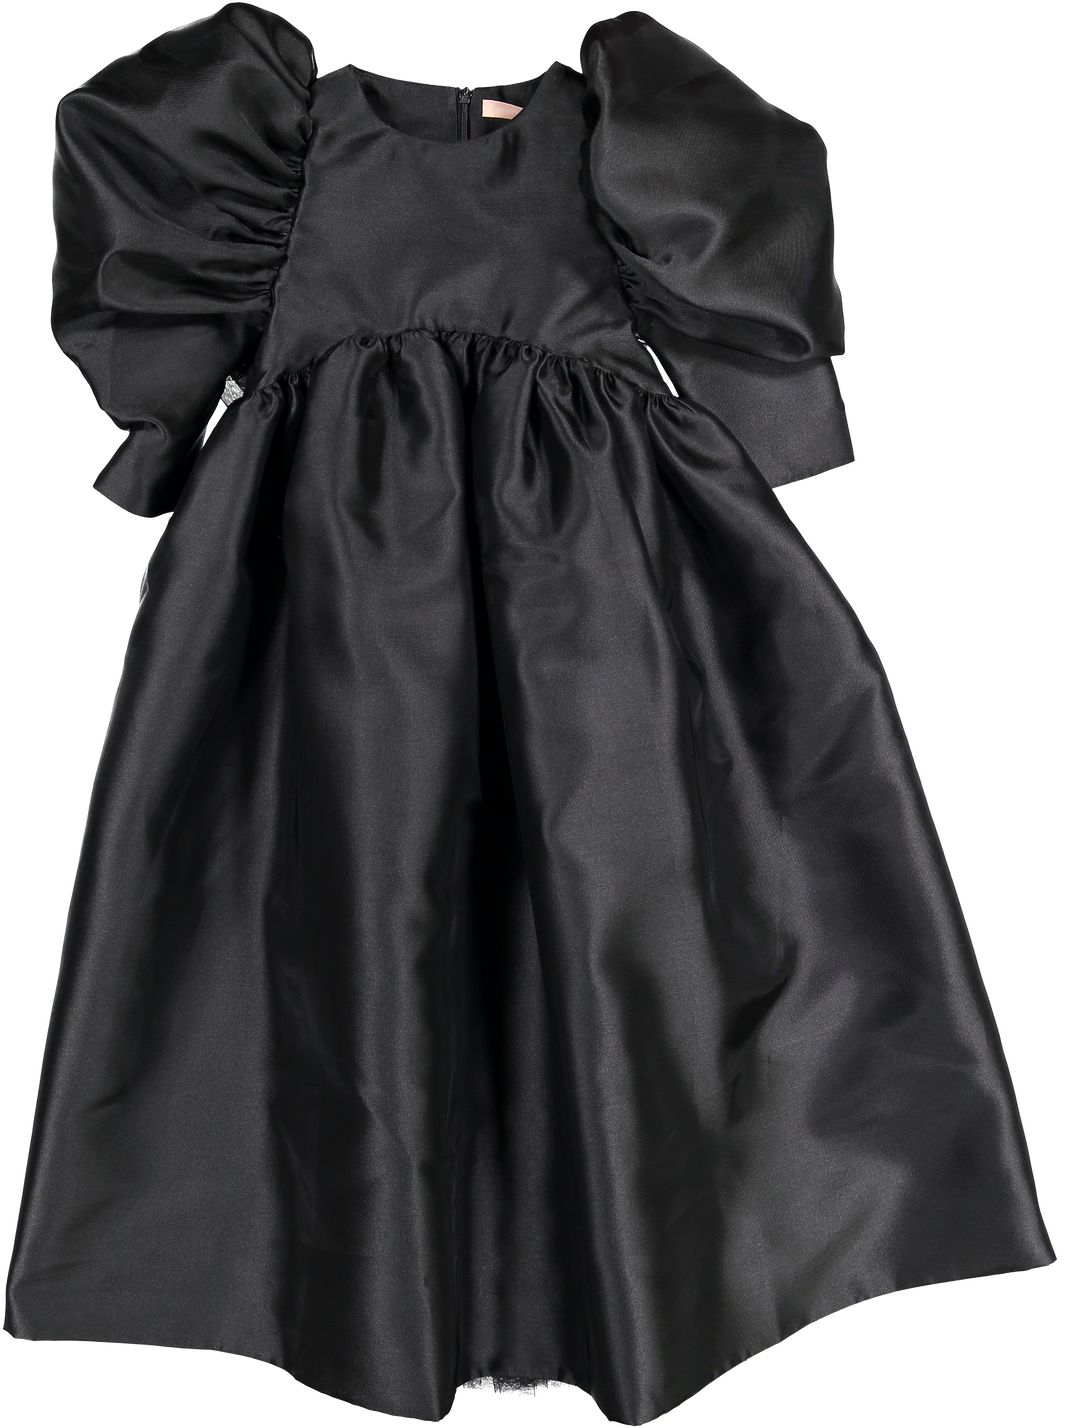 AW22-47.DIANA DRESS (GOWN)- ONYX BLACK